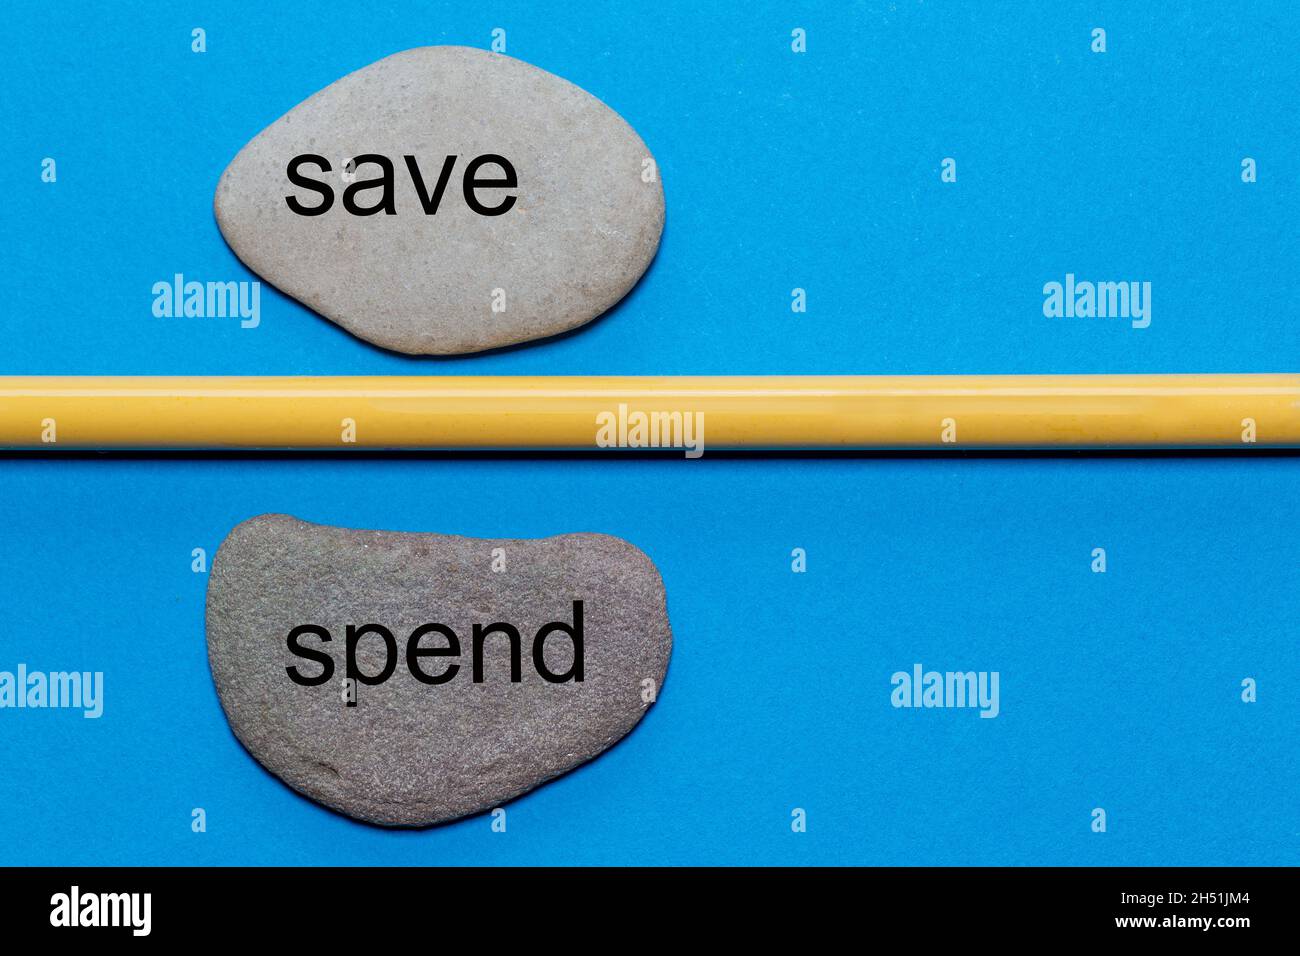 Die Worte Save and Spend sind auf natürlichen glatten Steinen geschrieben, die durch einen gelben Bleistift getrennt sind. Der Hintergrund ist blau isoliert und hat viel Platz Stockfoto